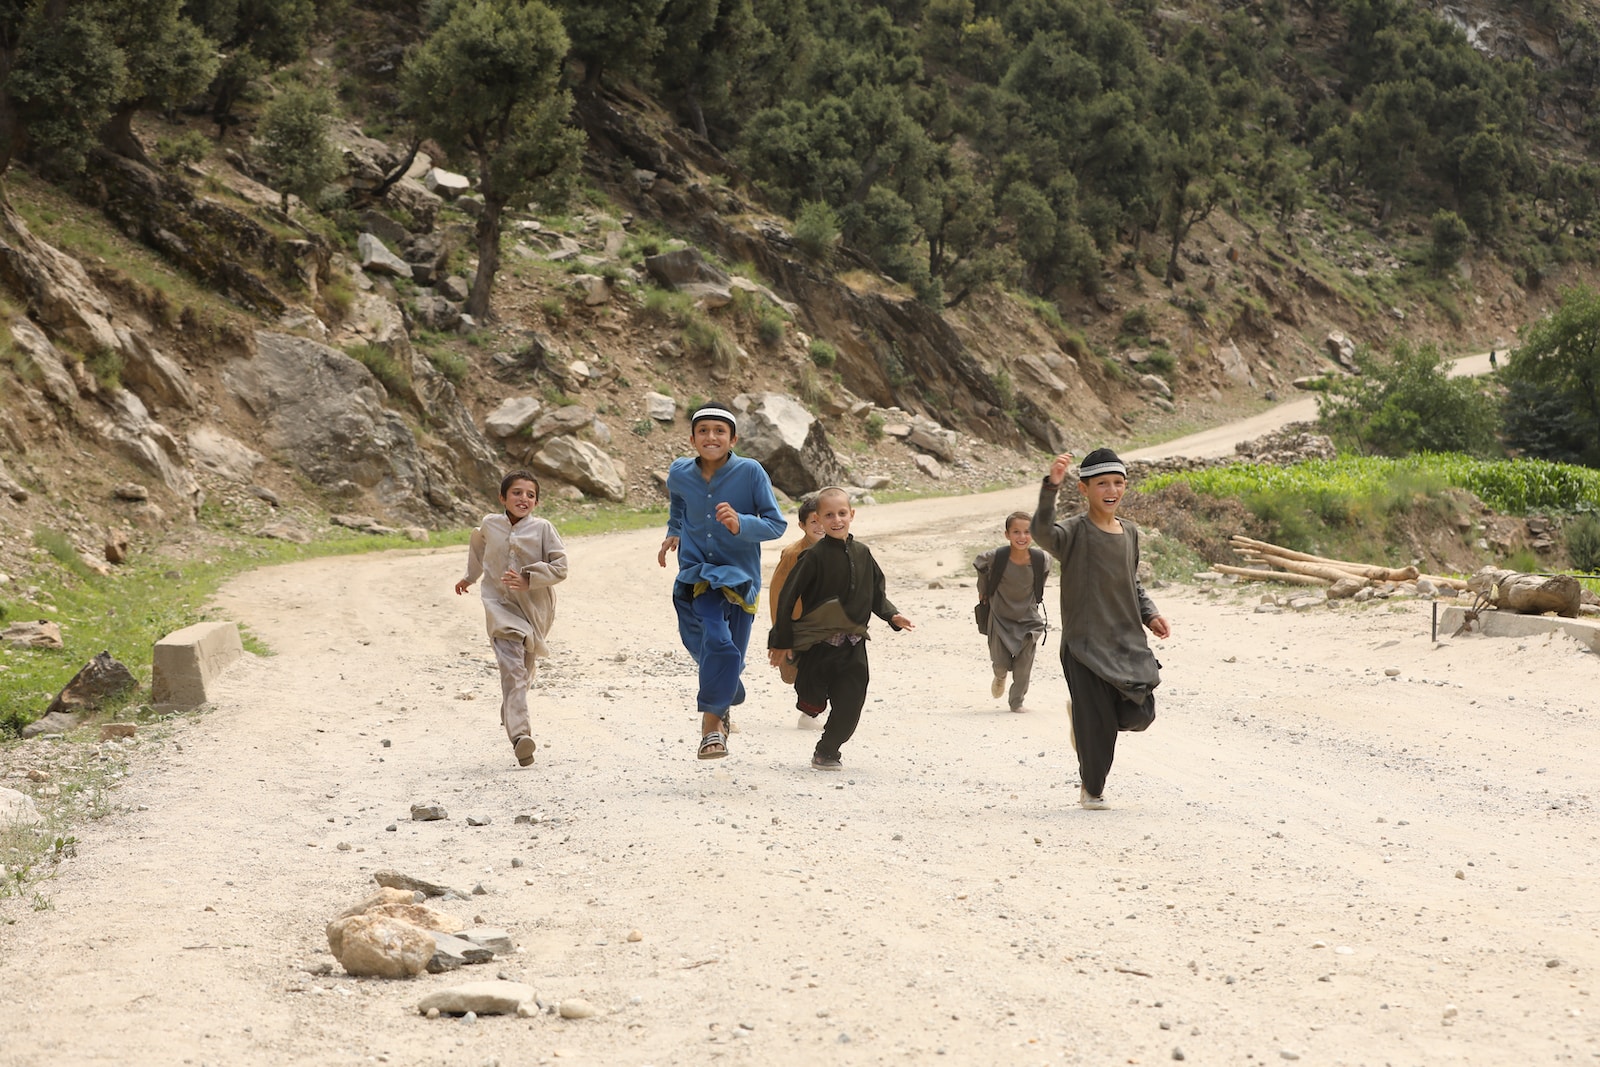 Enfants jouant en afghanistan